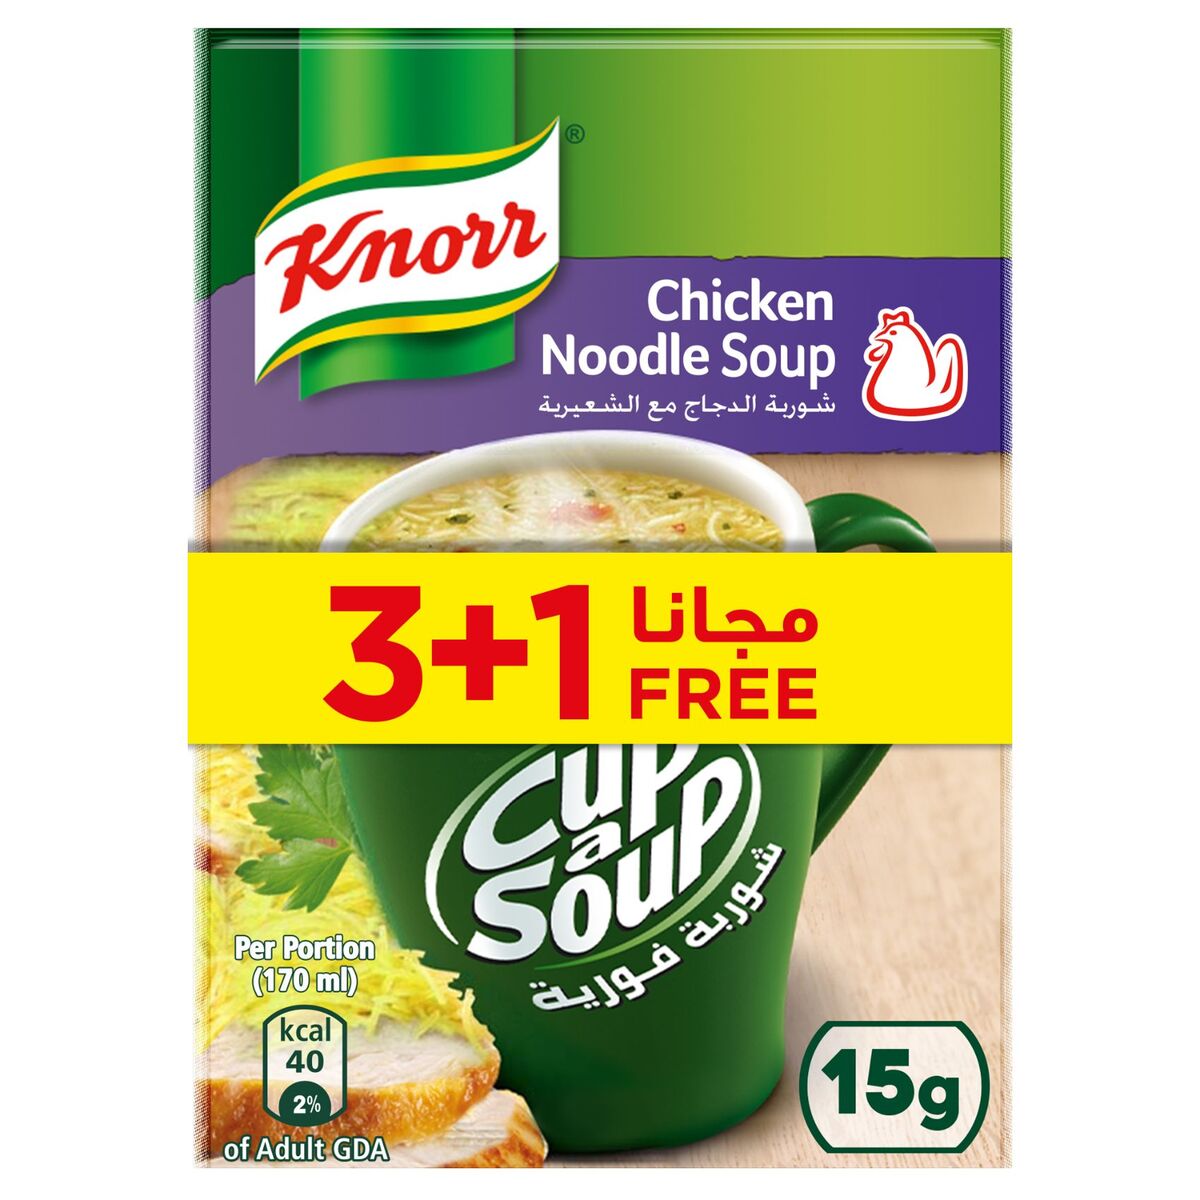 Knorr Cup-A-Soup Chicken Noodle Soup 15 g 3+1